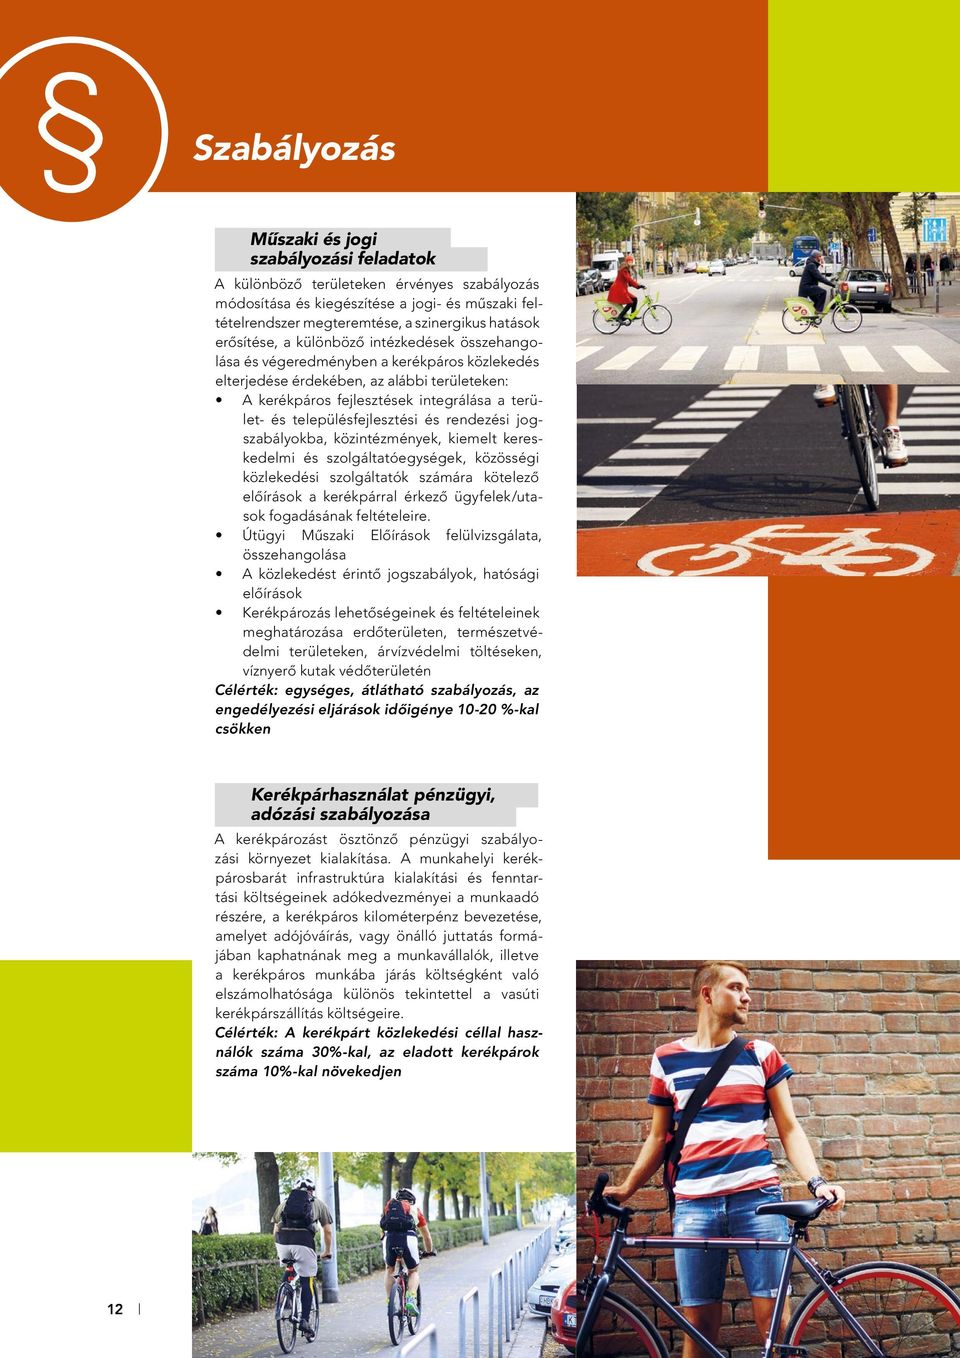 településfejlesztési és rendezési jogszabályokba, közintézmények, kiemelt kereskedelmi és szolgáltatóegységek, közösségi közlekedési szolgáltatók számára kötelezô elôírások a kerékpárral érkezô